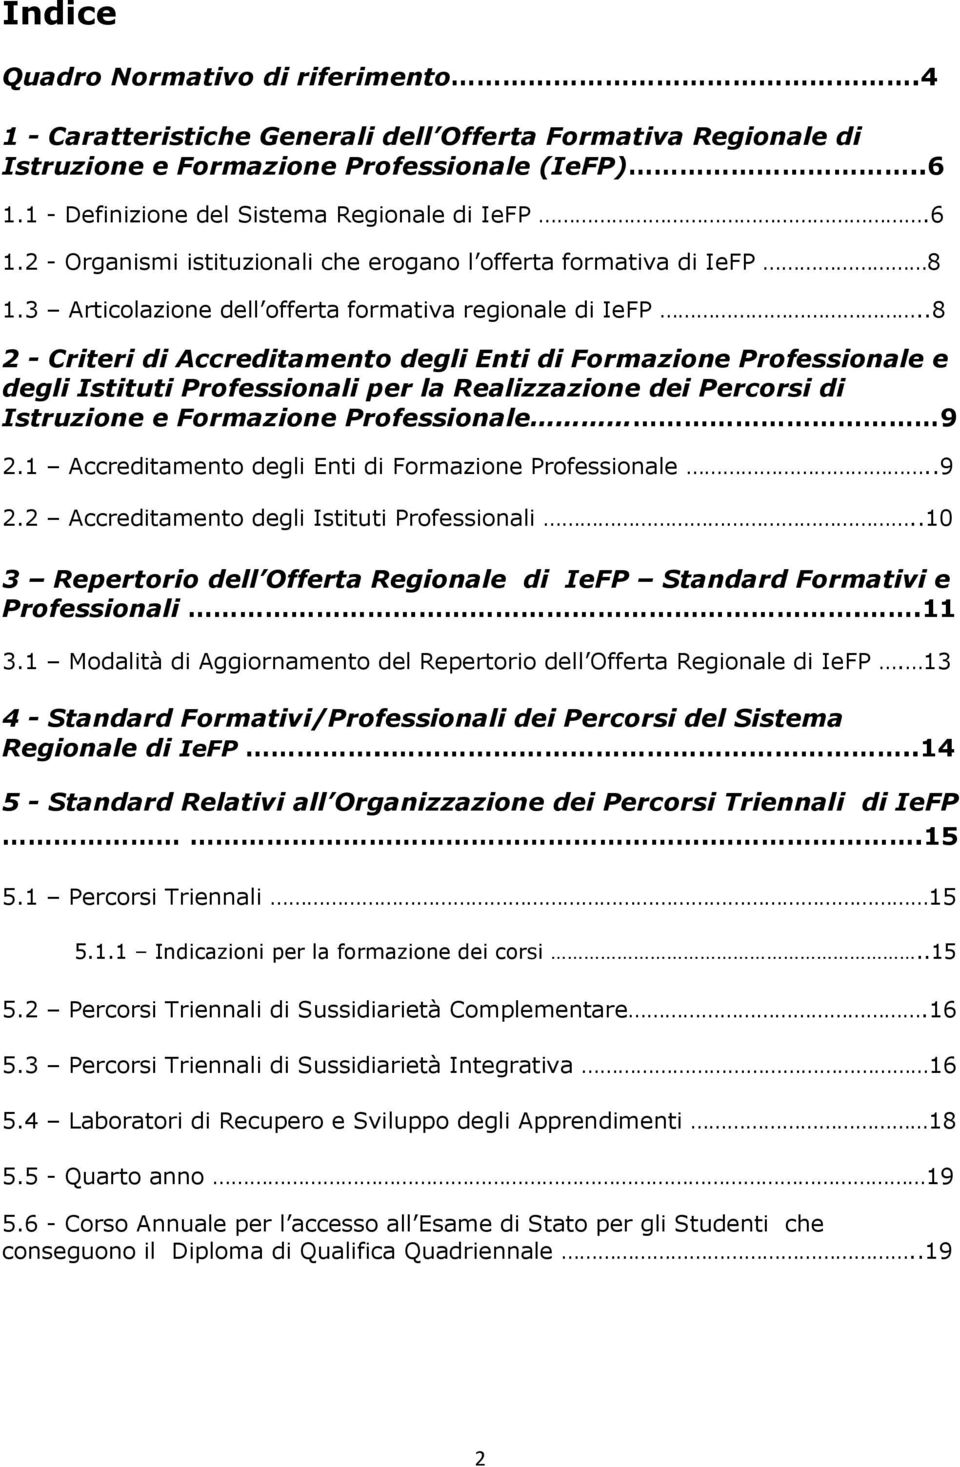 .8 2 - Criteri di Accreditamento degli Enti di Formazione Professionale e degli Istituti Professionali per la Realizzazione dei Percorsi di Istruzione e Formazione Professionale 9 2.